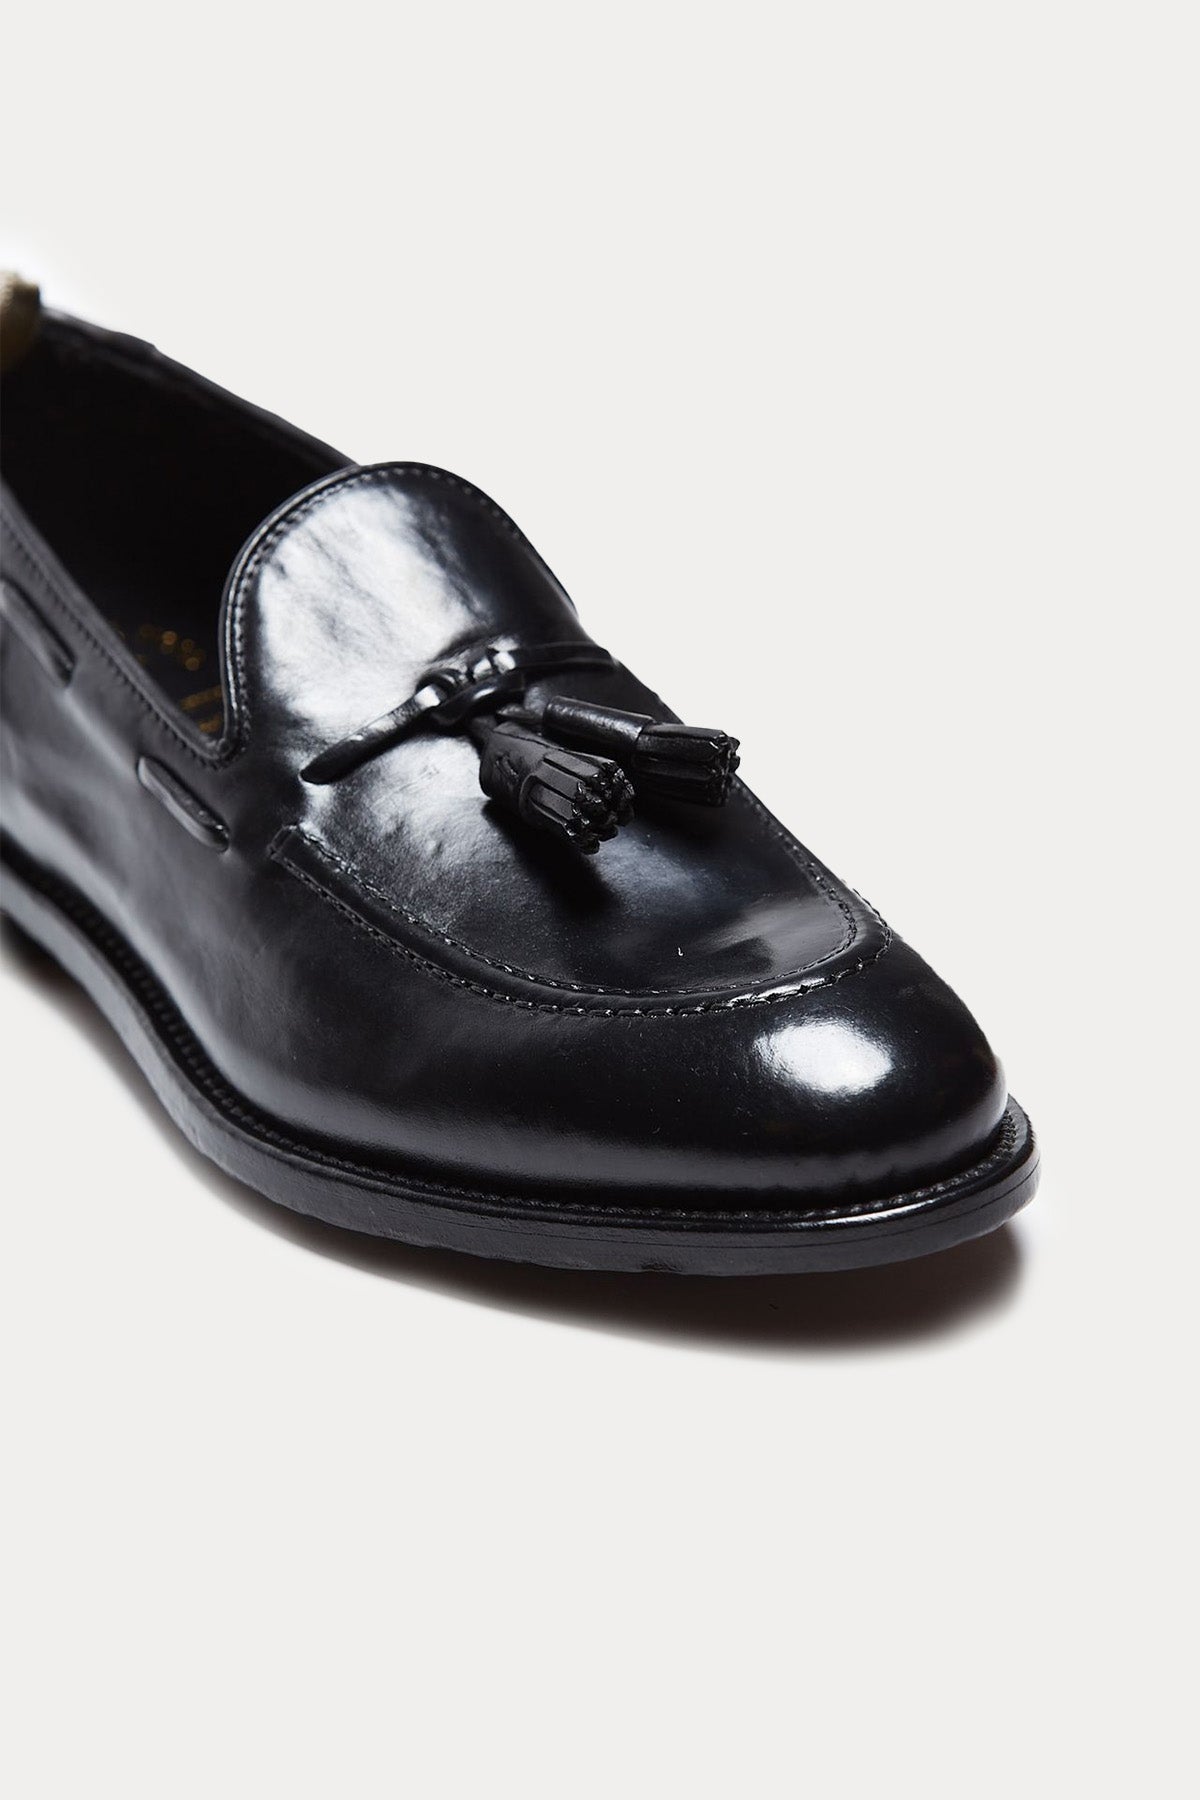 Officine Creative Tulane Deri Püsküllü Loafer Ayakkabı